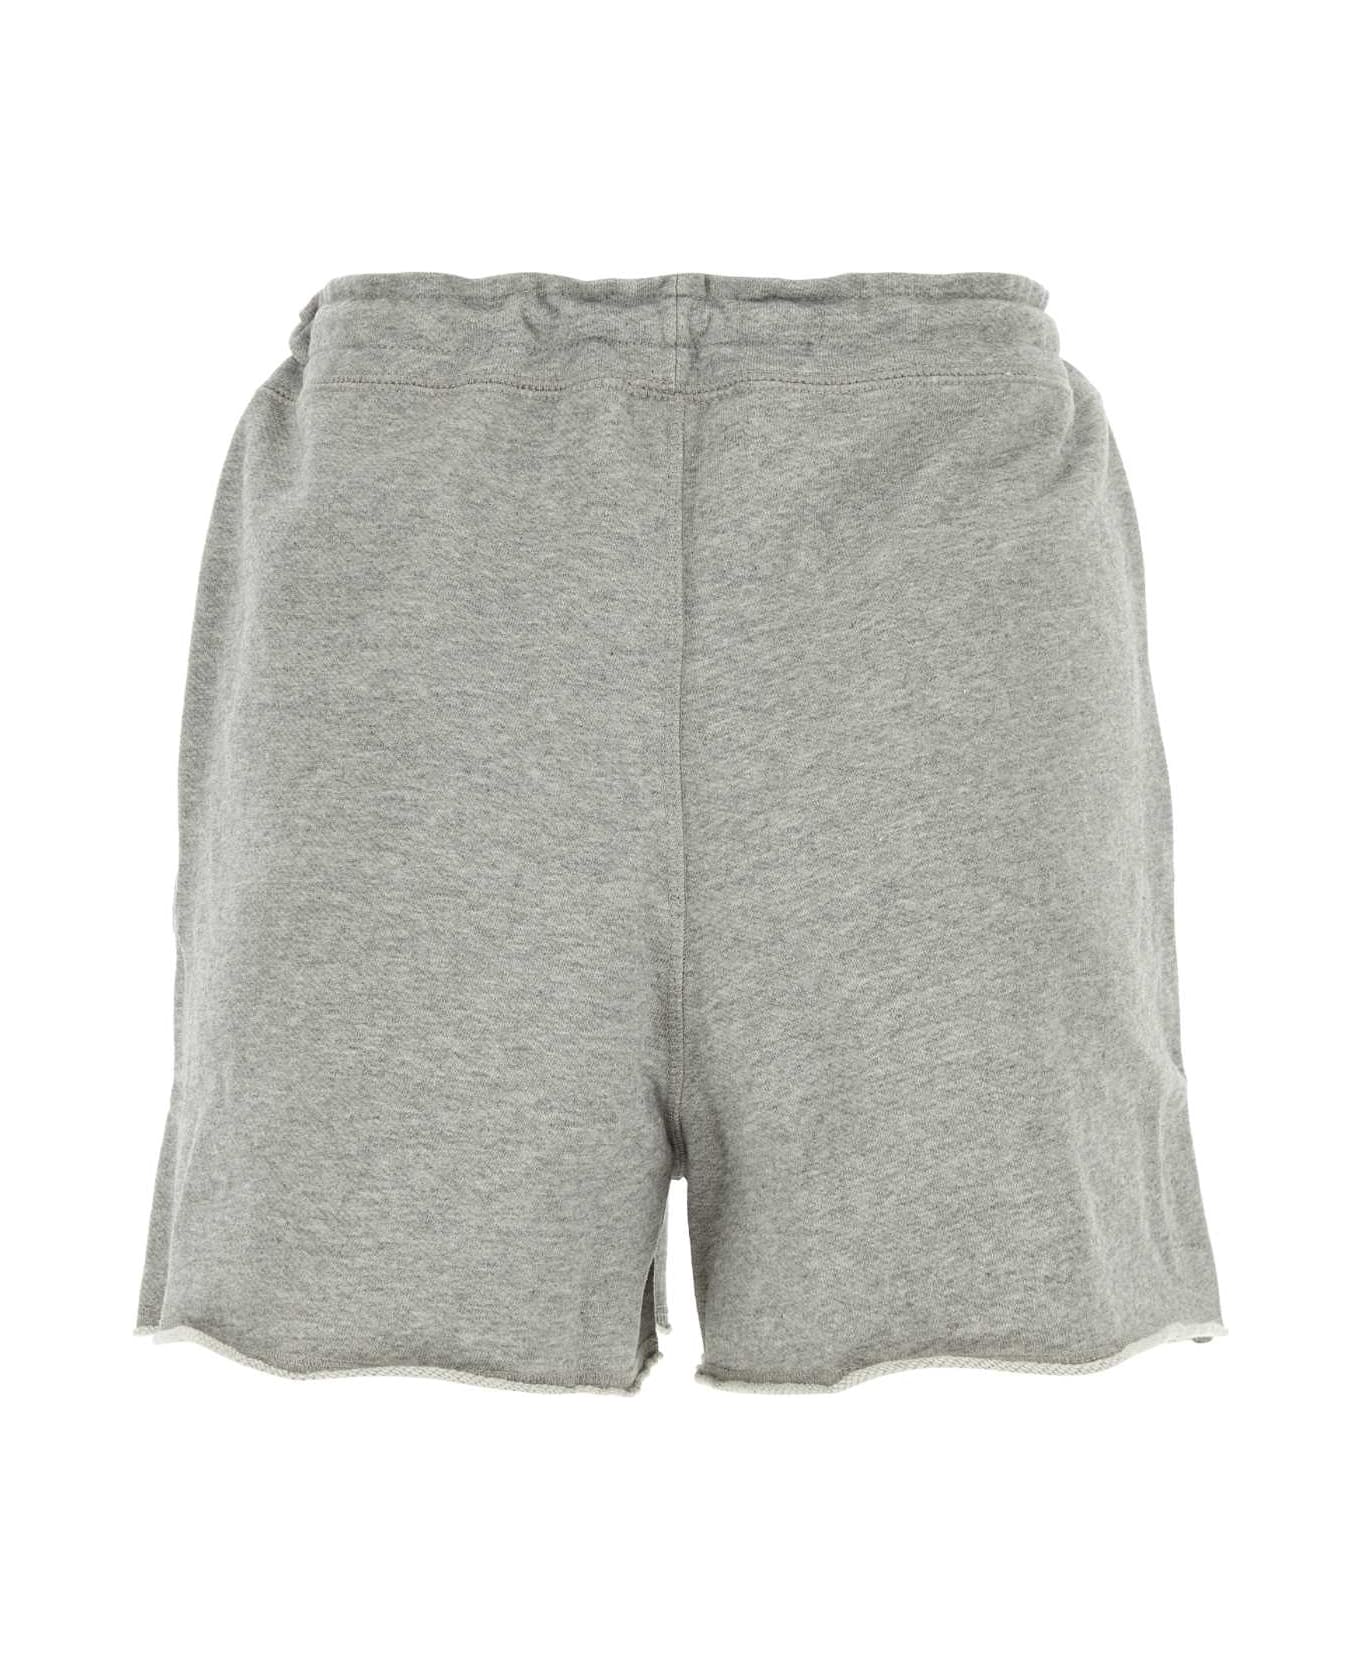 Ganni Grey Cotton Shorts - PALOMAMELANGE